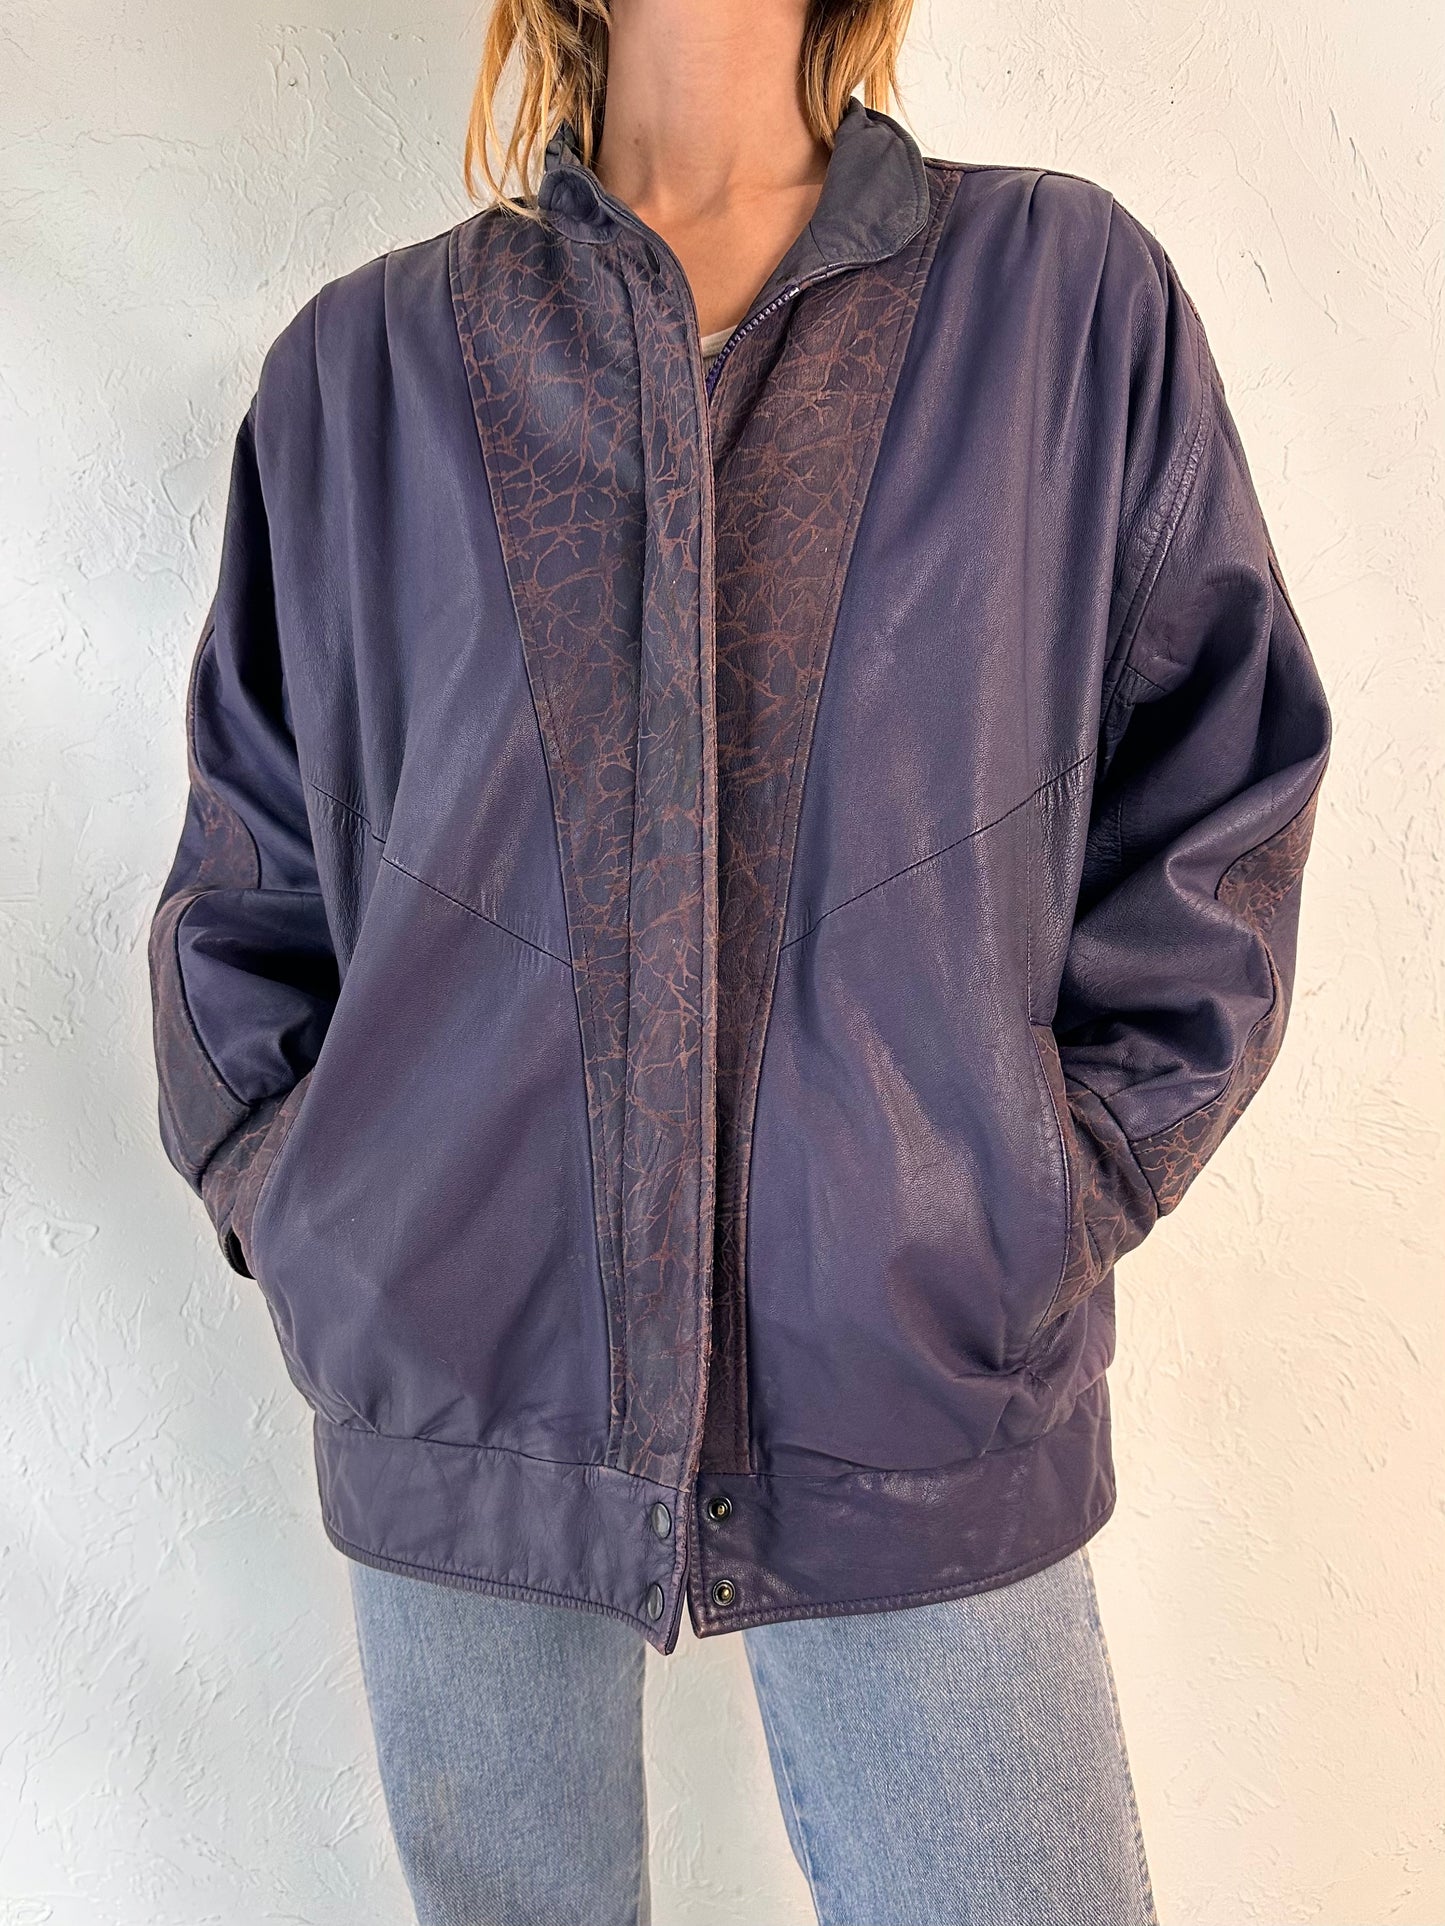 90s Purple Leather Jacket / Medium